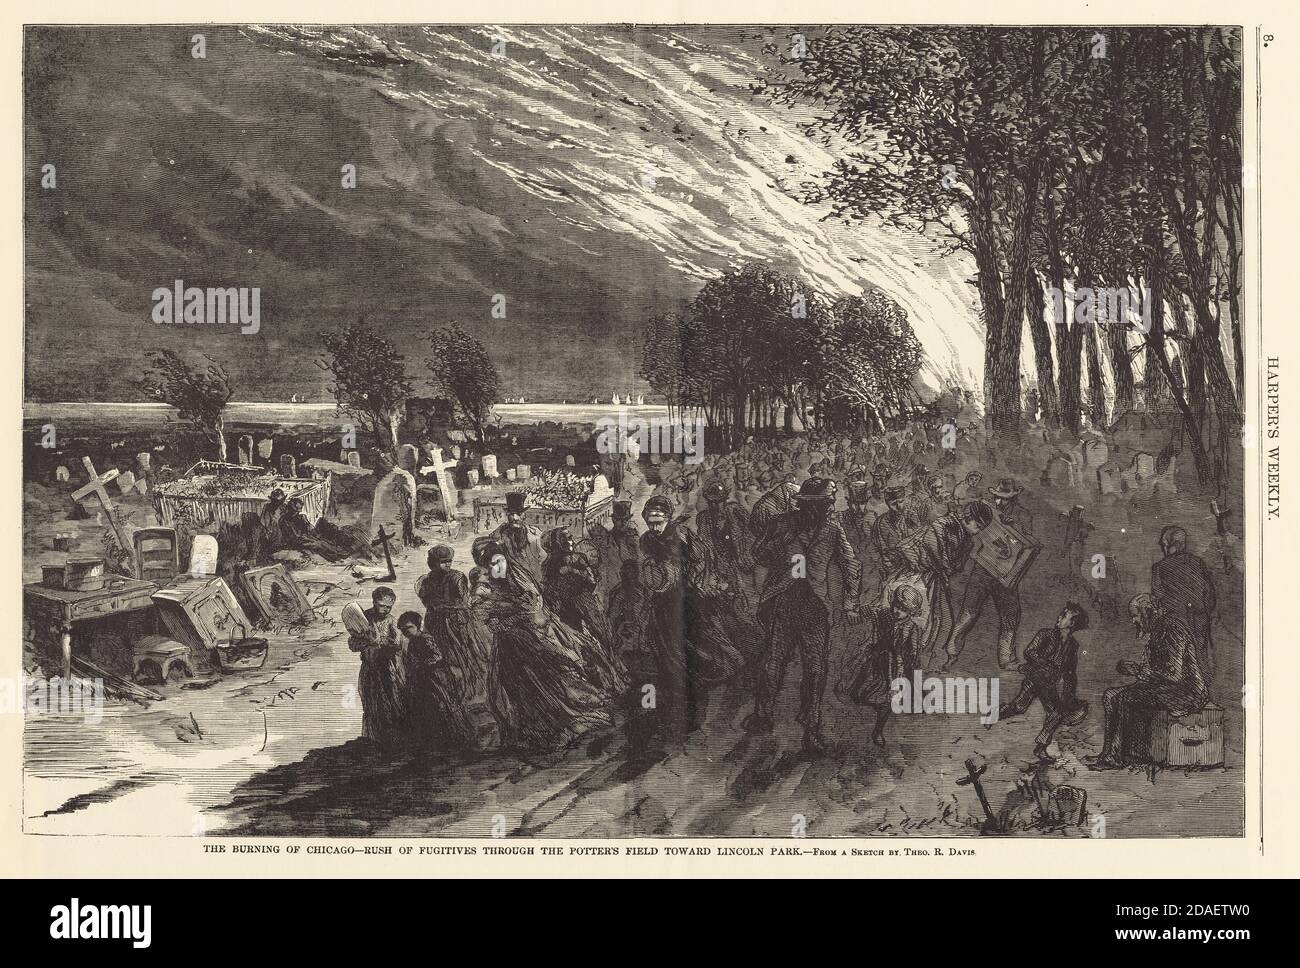 Illustration de Harper's Weekly présentant des réfugiés à Lincoln Park pendant le feu de Chicago de 1871. Banque D'Images